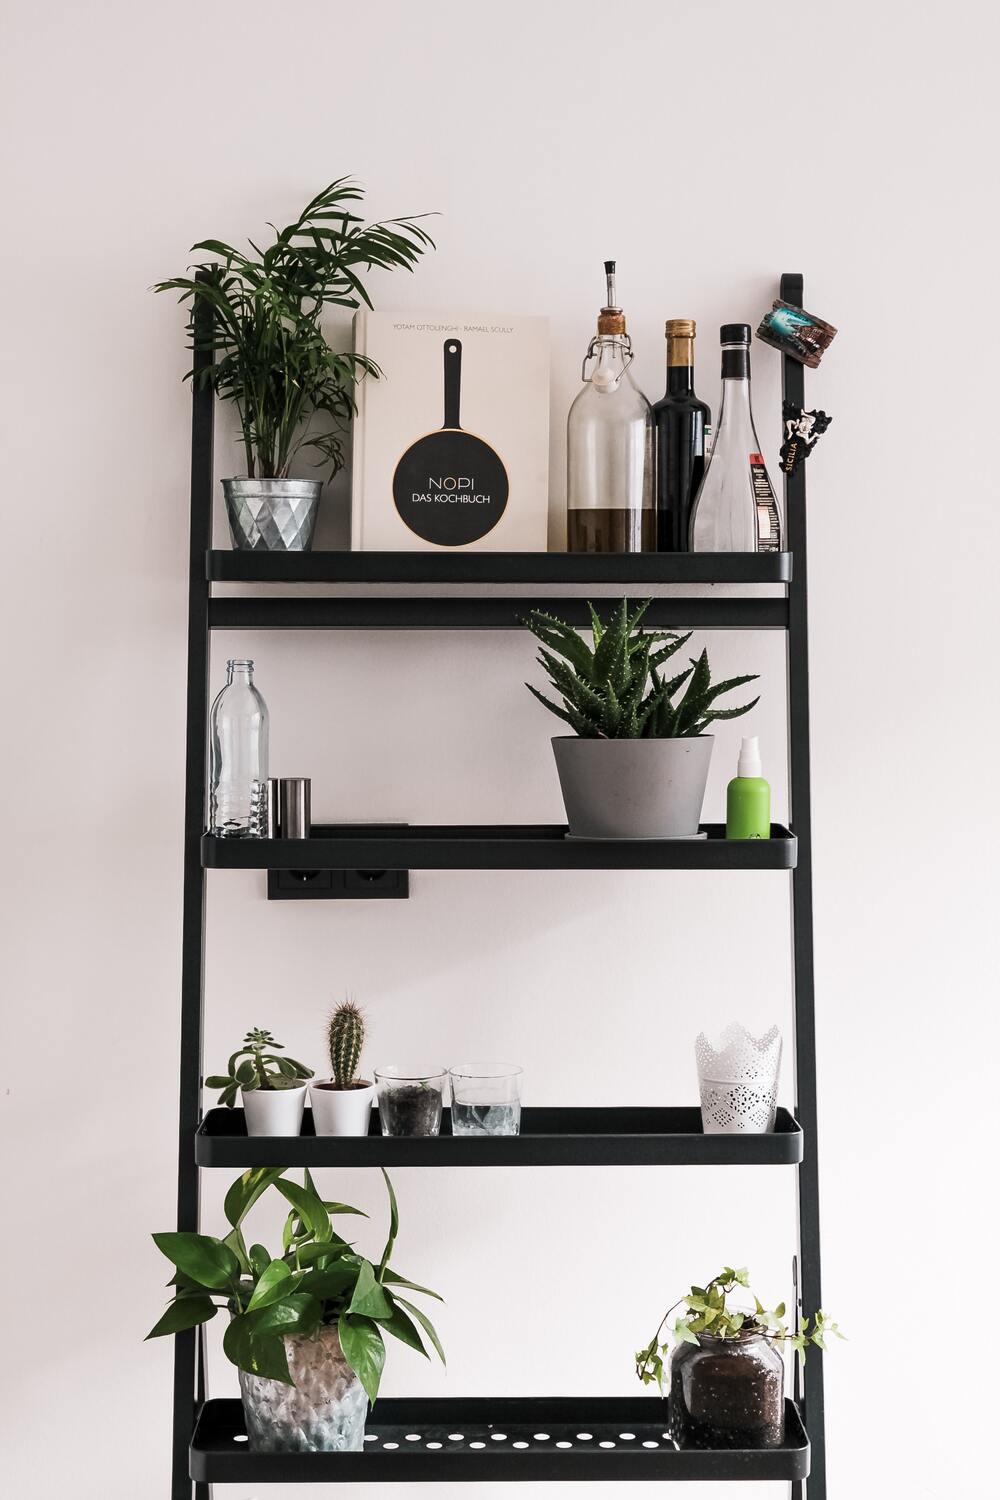 Pflanzen auf allen Ebenen in einem schwarzen Metallregal, dazwischen einzelne Küchenelemente wie ein Kochbuch, Öl, Essig und eine leere Glasflasche